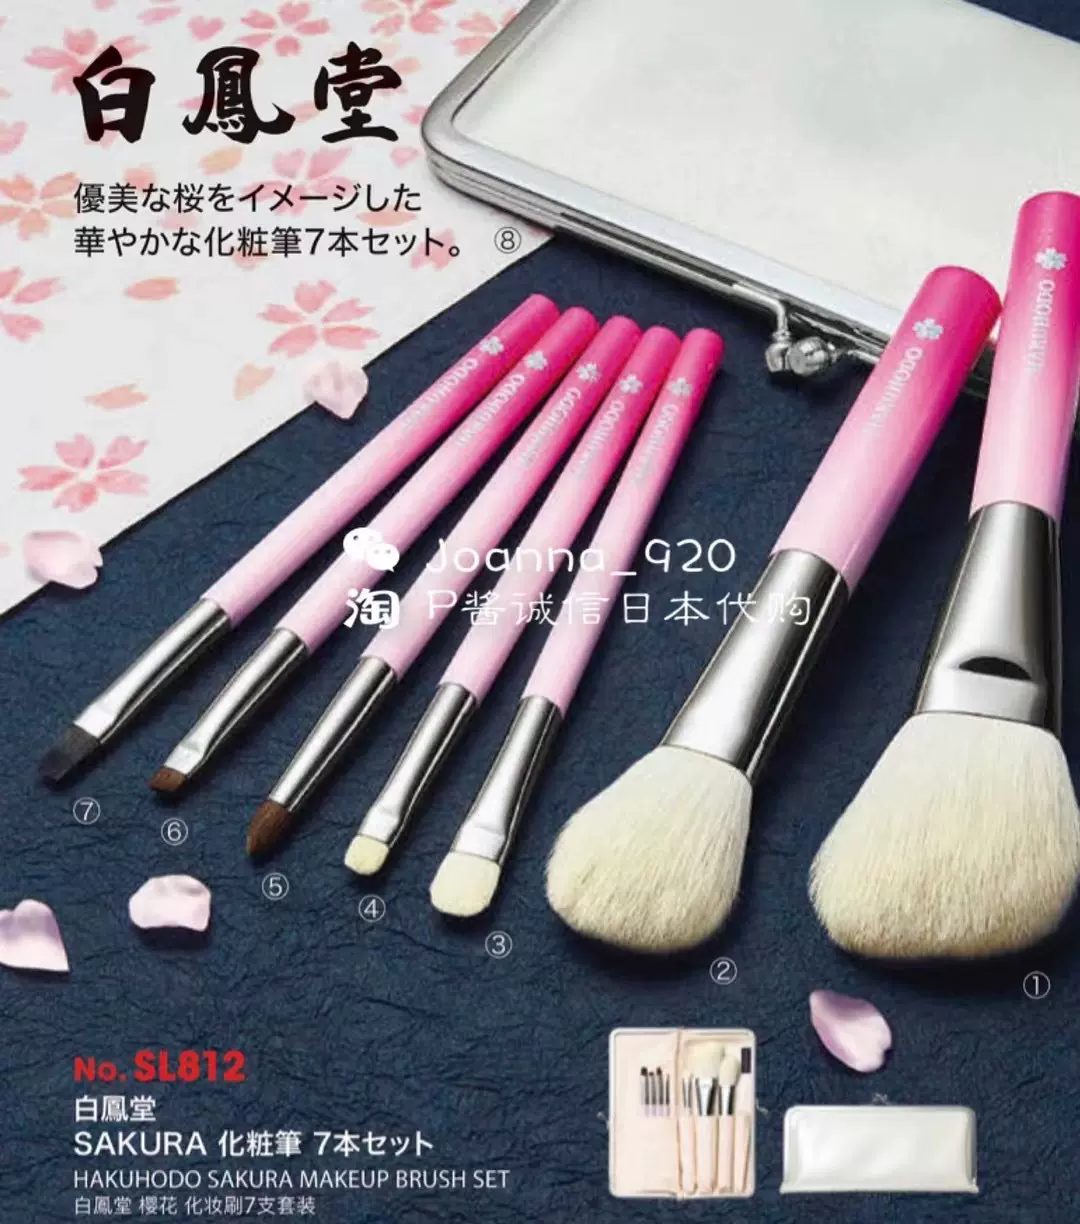 白鳳堂 化粧筆 メイクブラシ 5本セット - メイク道具/化粧小物